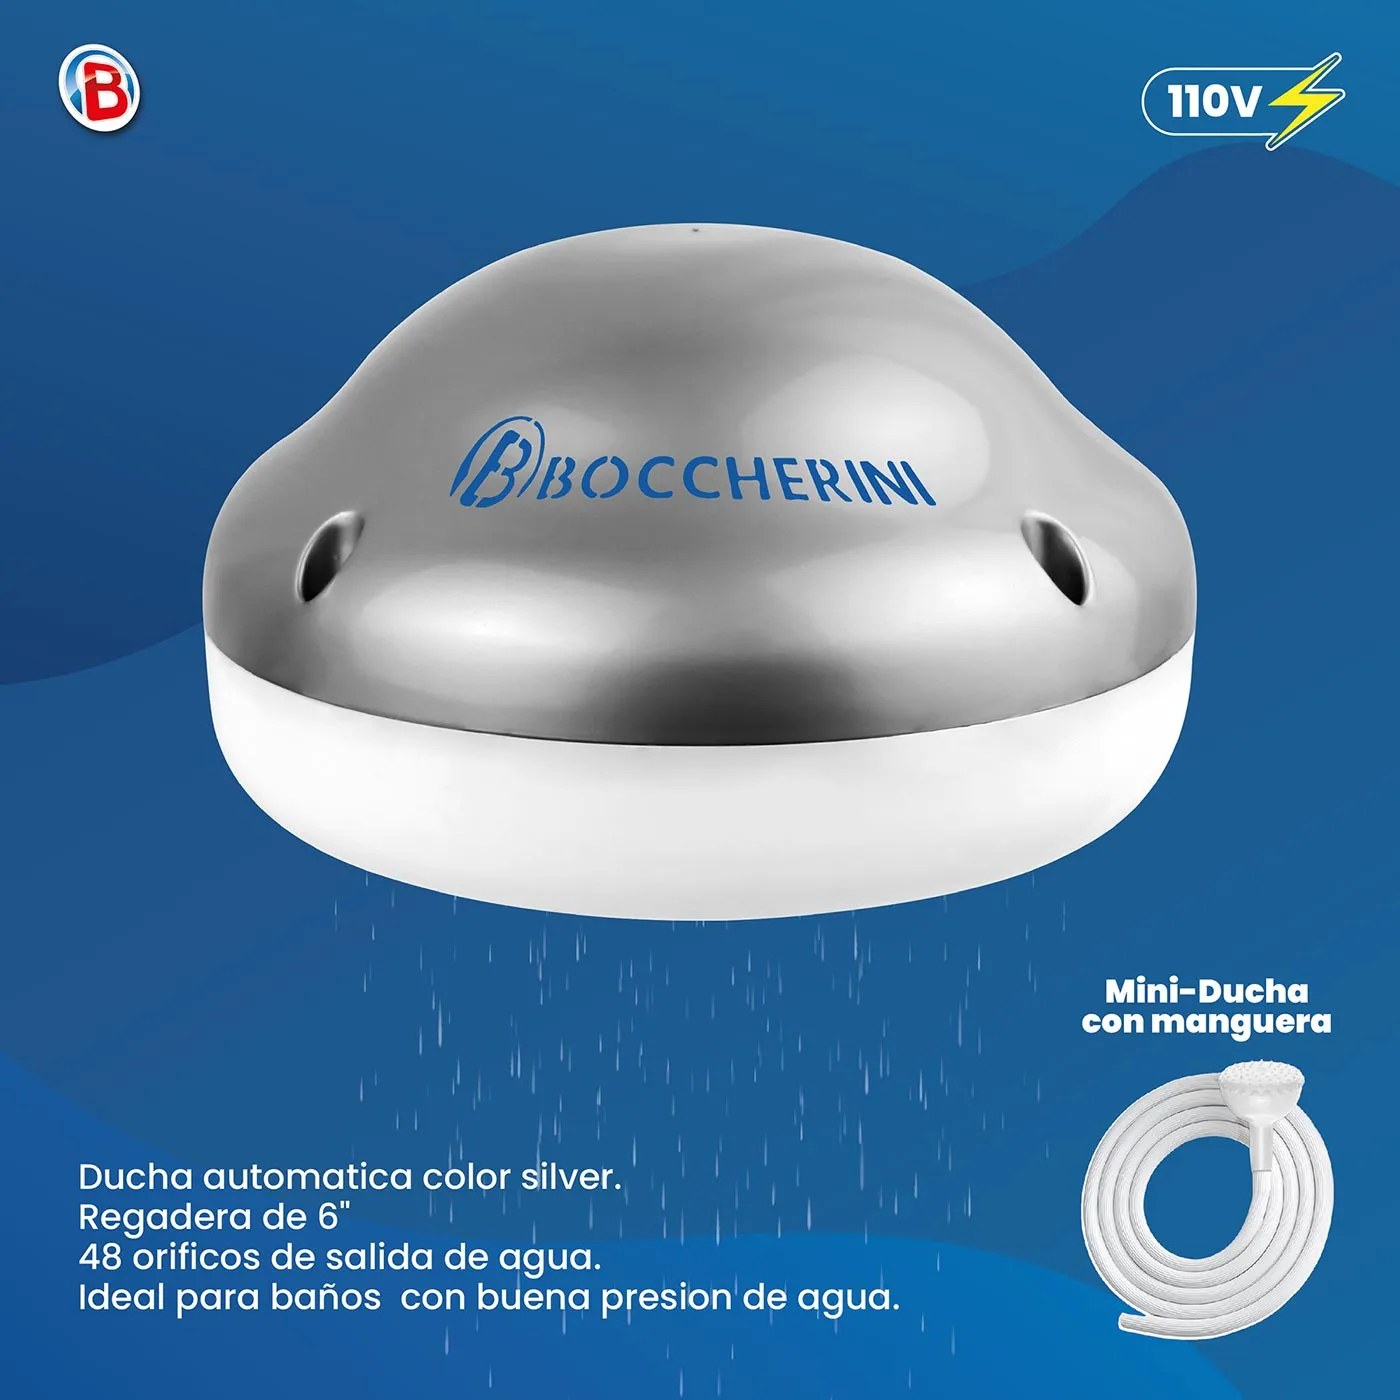 Ducha Electrica BOCCHERINI Premium Zent Silver 120V con Manguera